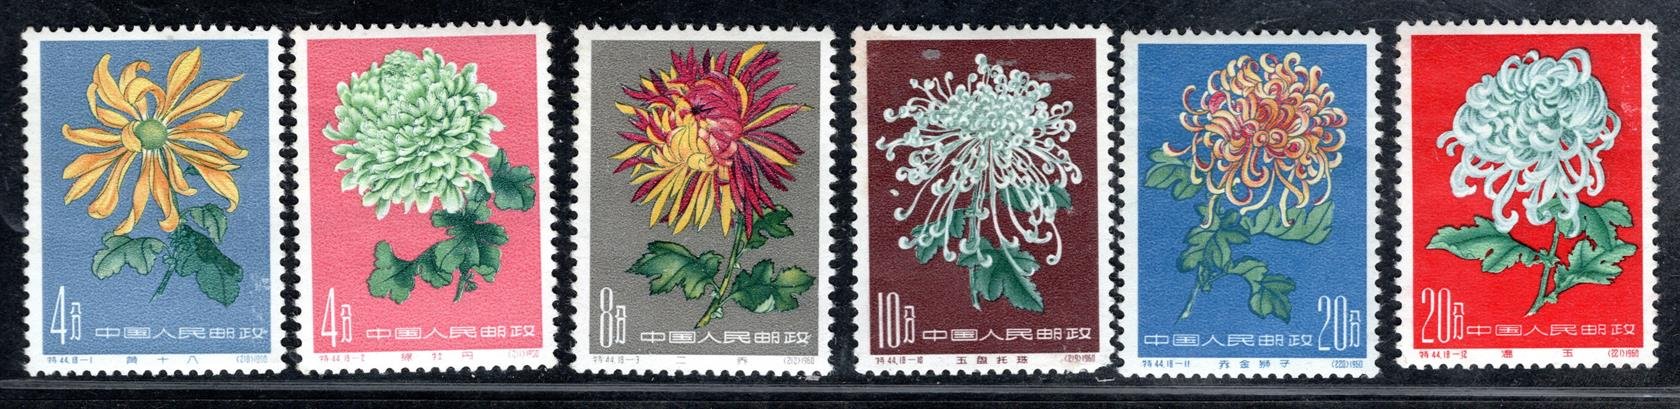 Čina - Mi. 583 - 88, Chrysantény, drobné vady lepu, zoubkování  i obrazu (viz scan), kompletní svěží řada